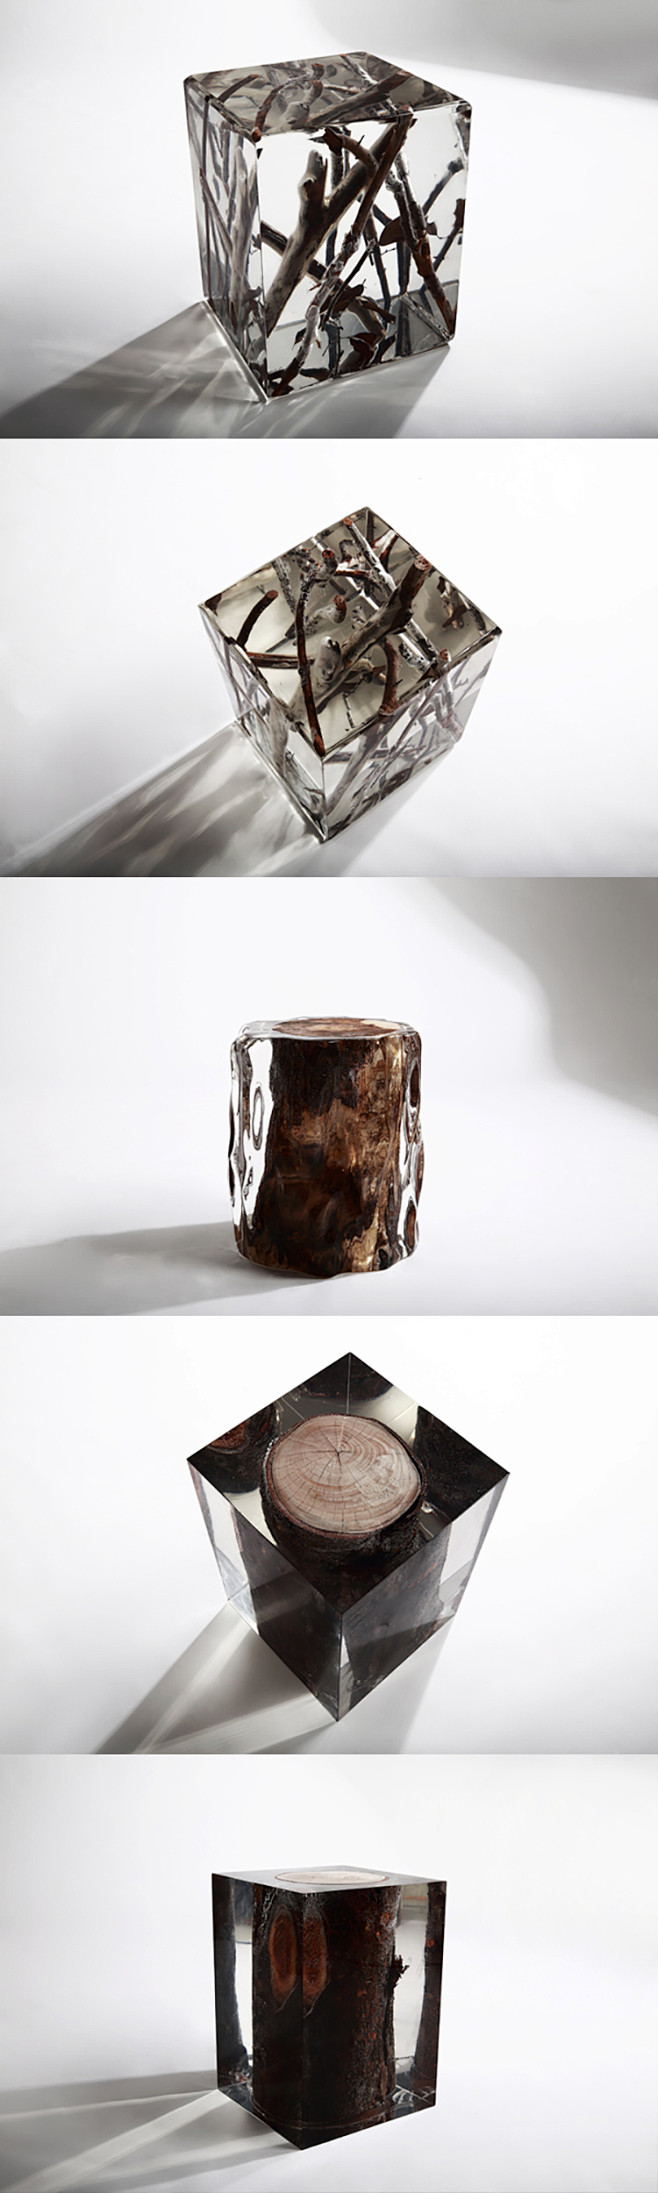 珀晶木华石雕塑 透明树脂艺术品 抽象室内...